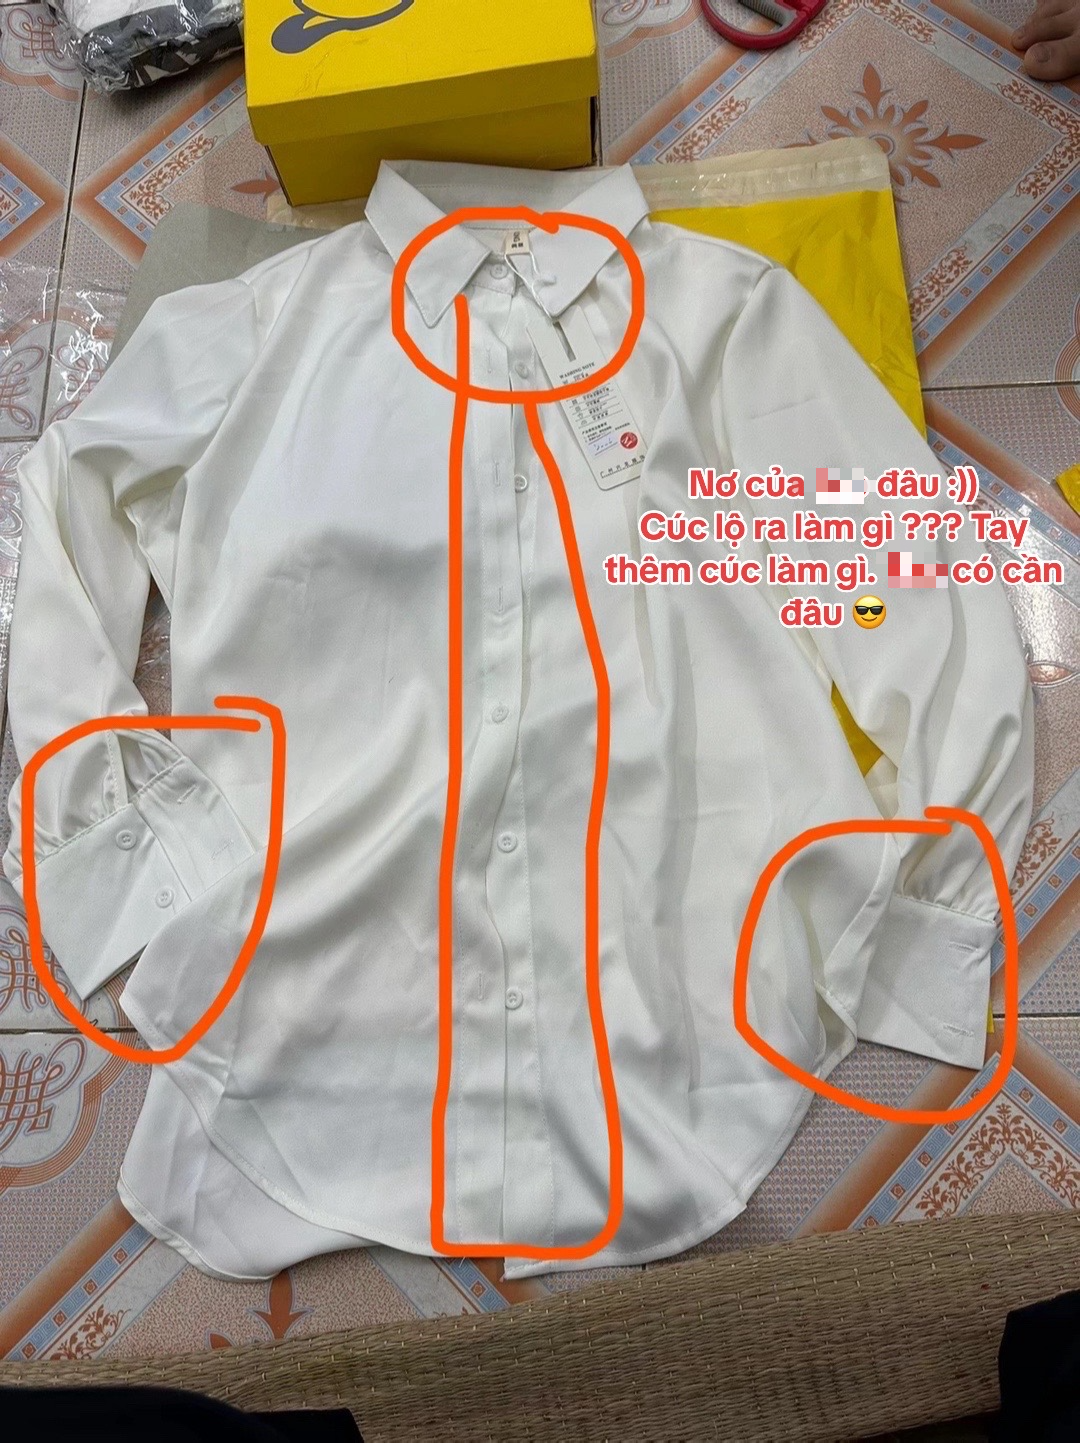 1001 chuyện cười ra nước mắt khi order quần áo trên Taobao: Hàng về tay "không đội trời chung" so với ảnh mẫu- Ảnh 14.